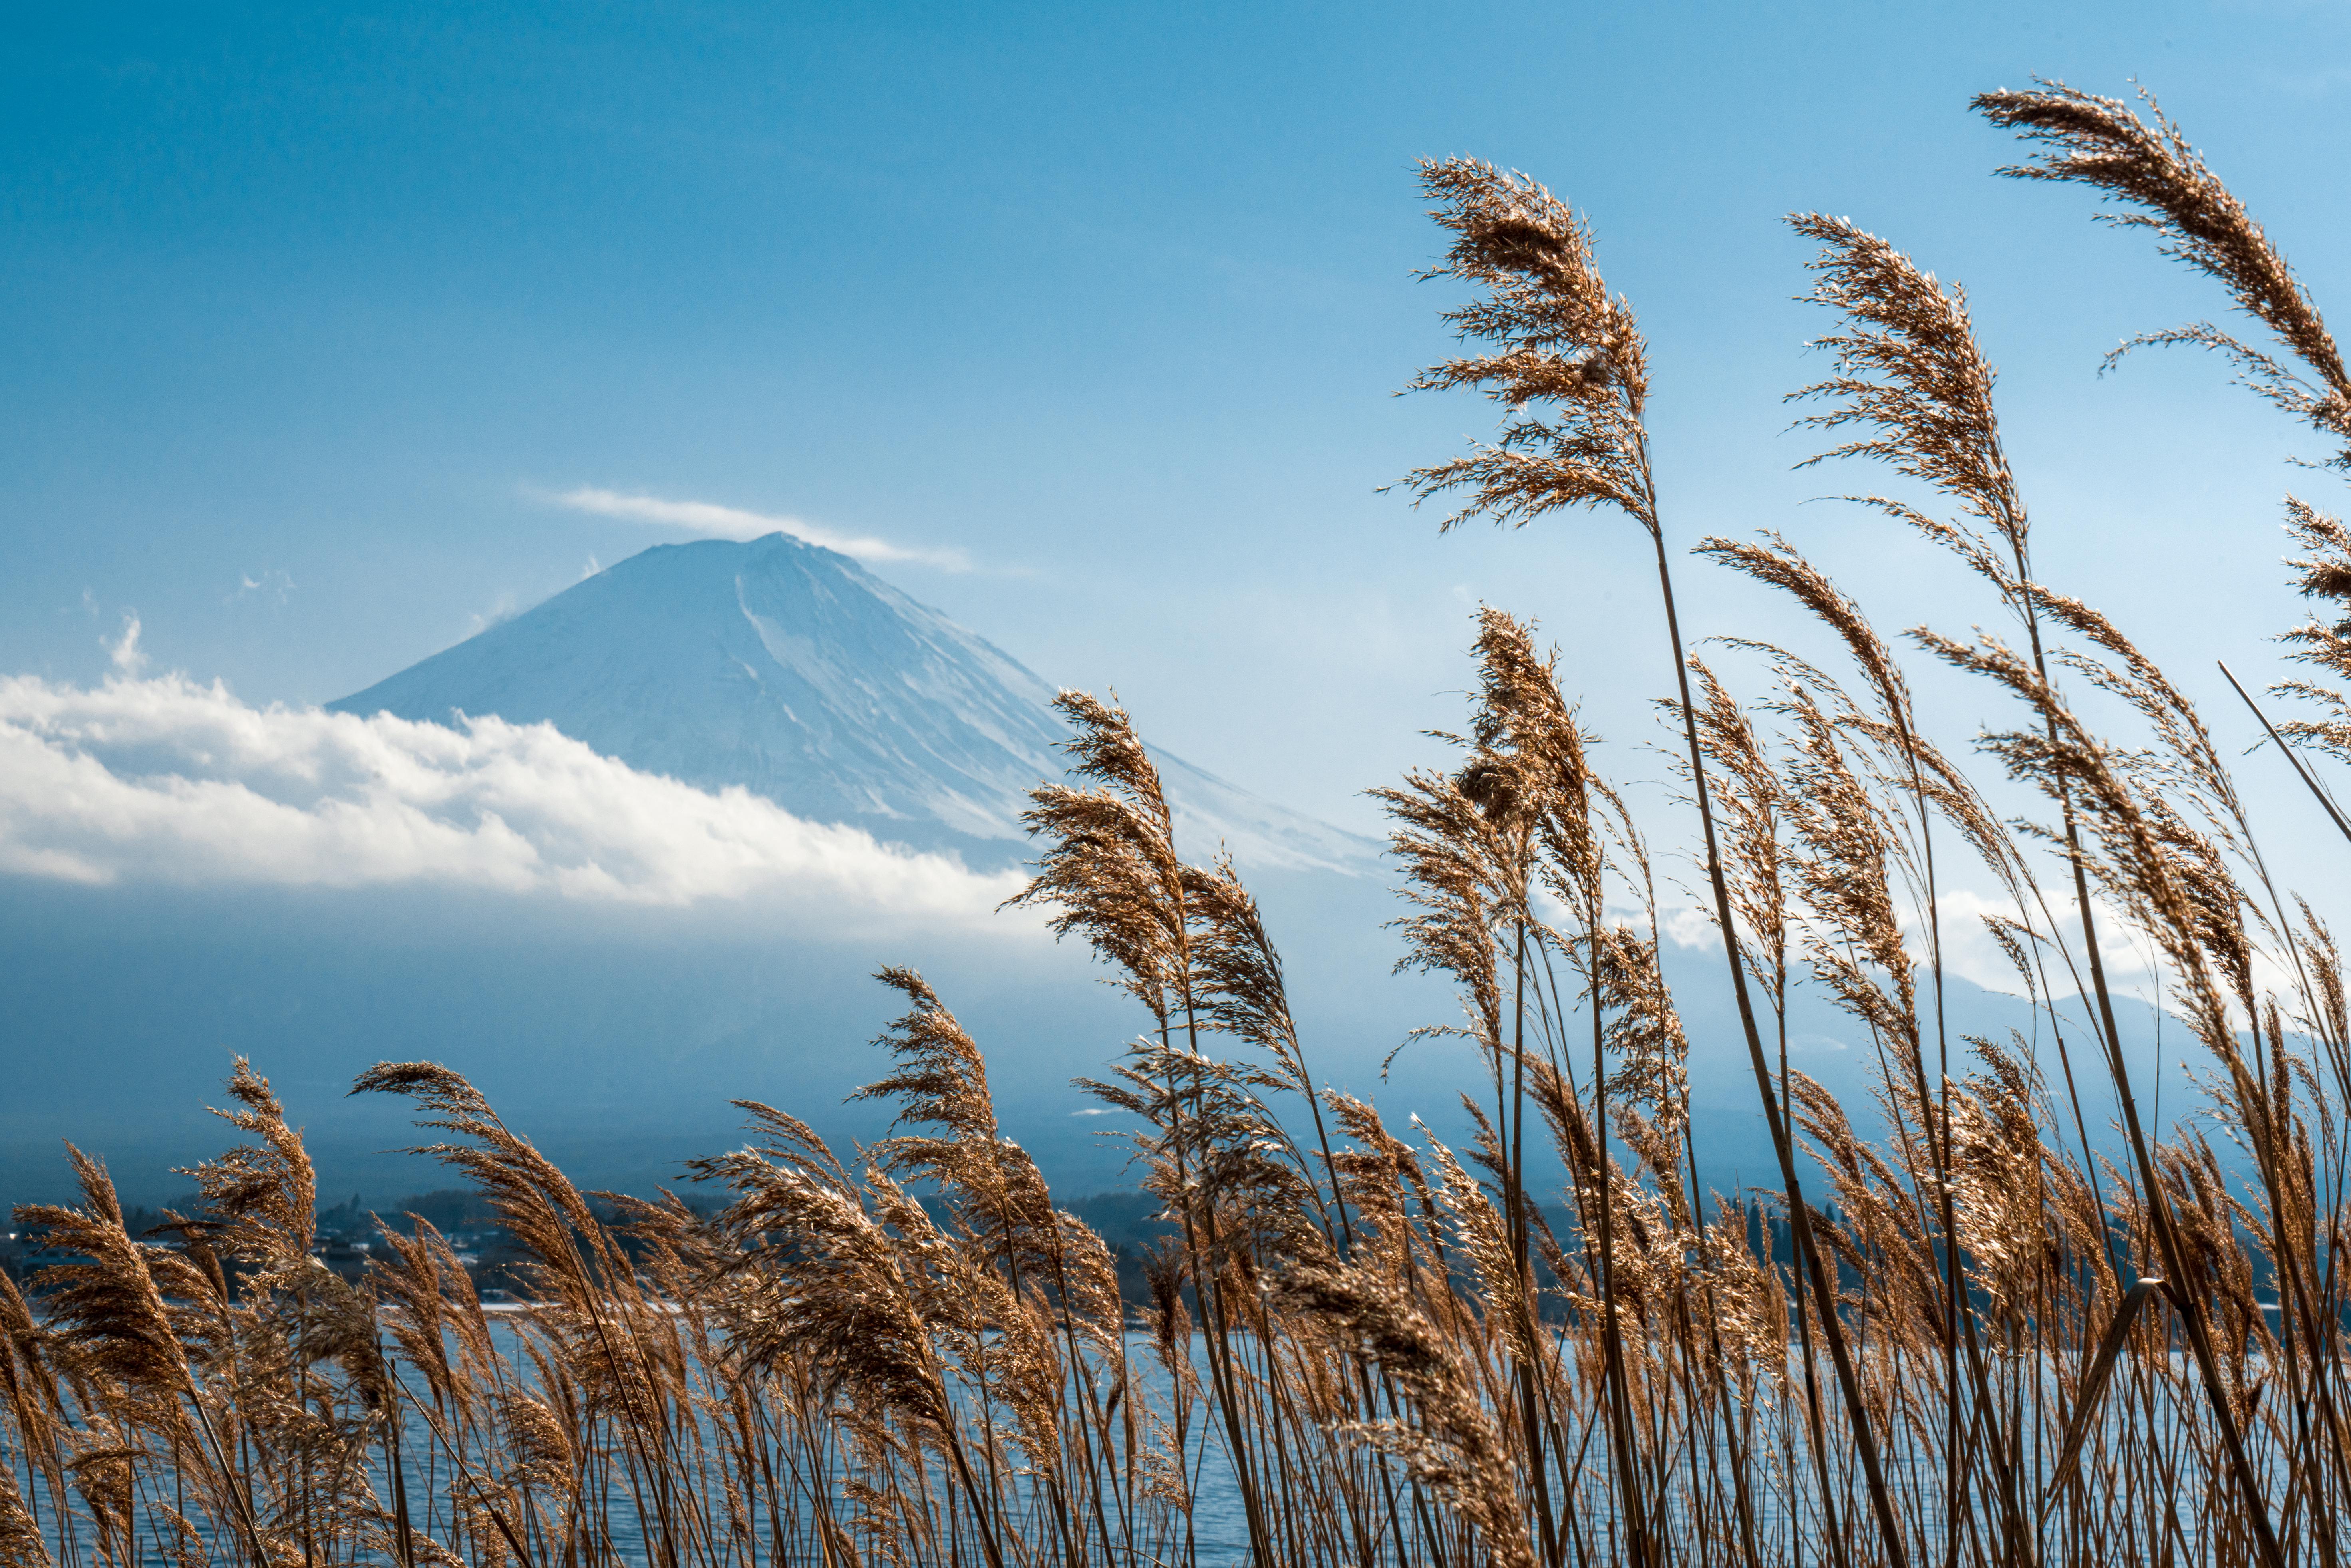 Earth Mount Fuji 5885x3925